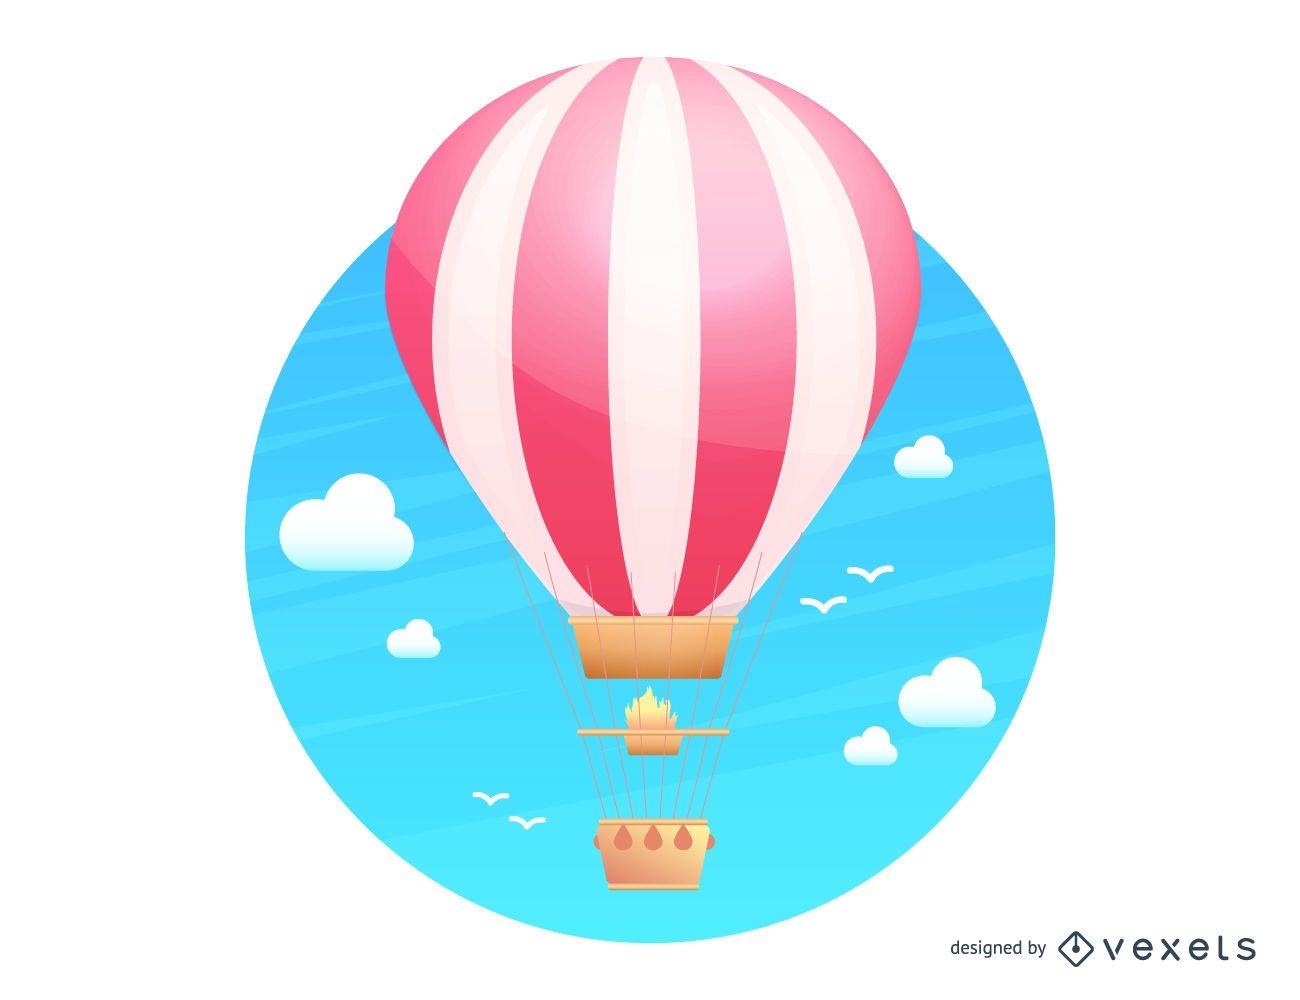 cute hot air balloon